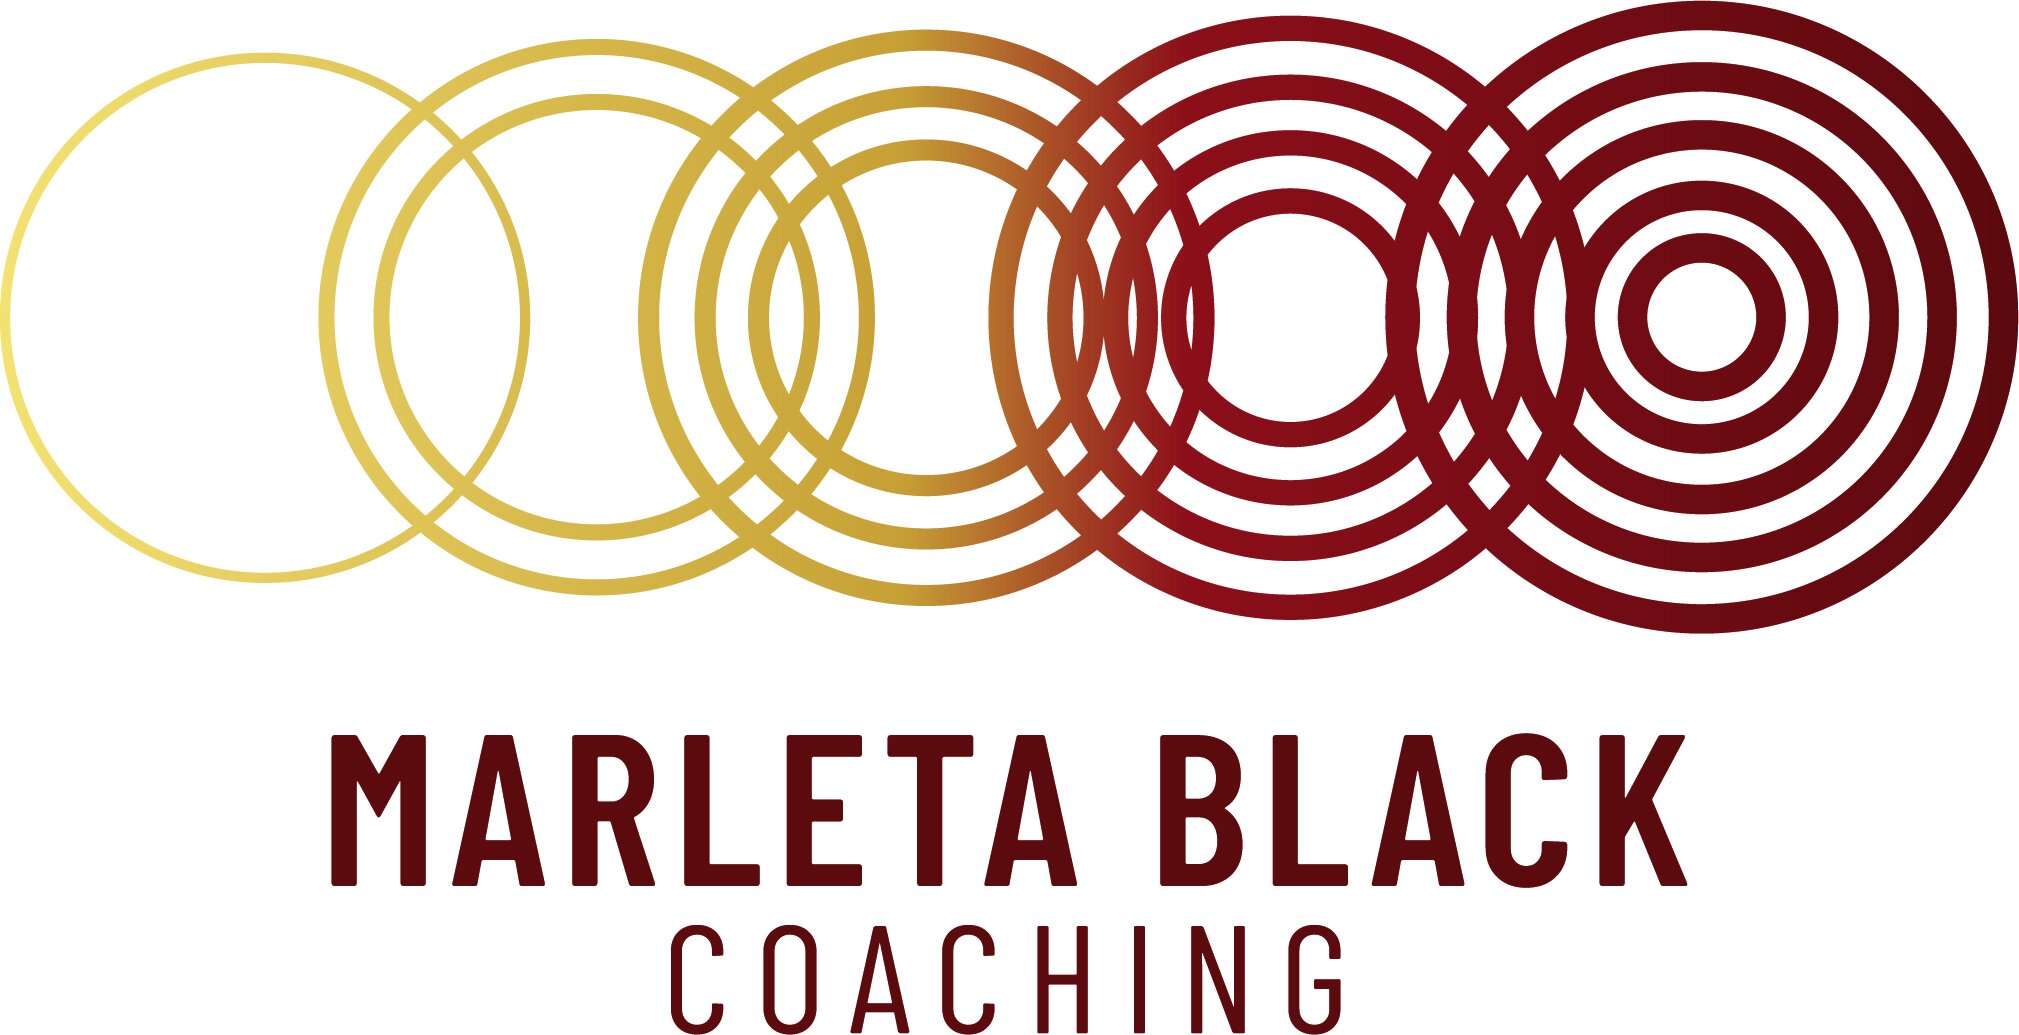 Marleta Black Coaching 